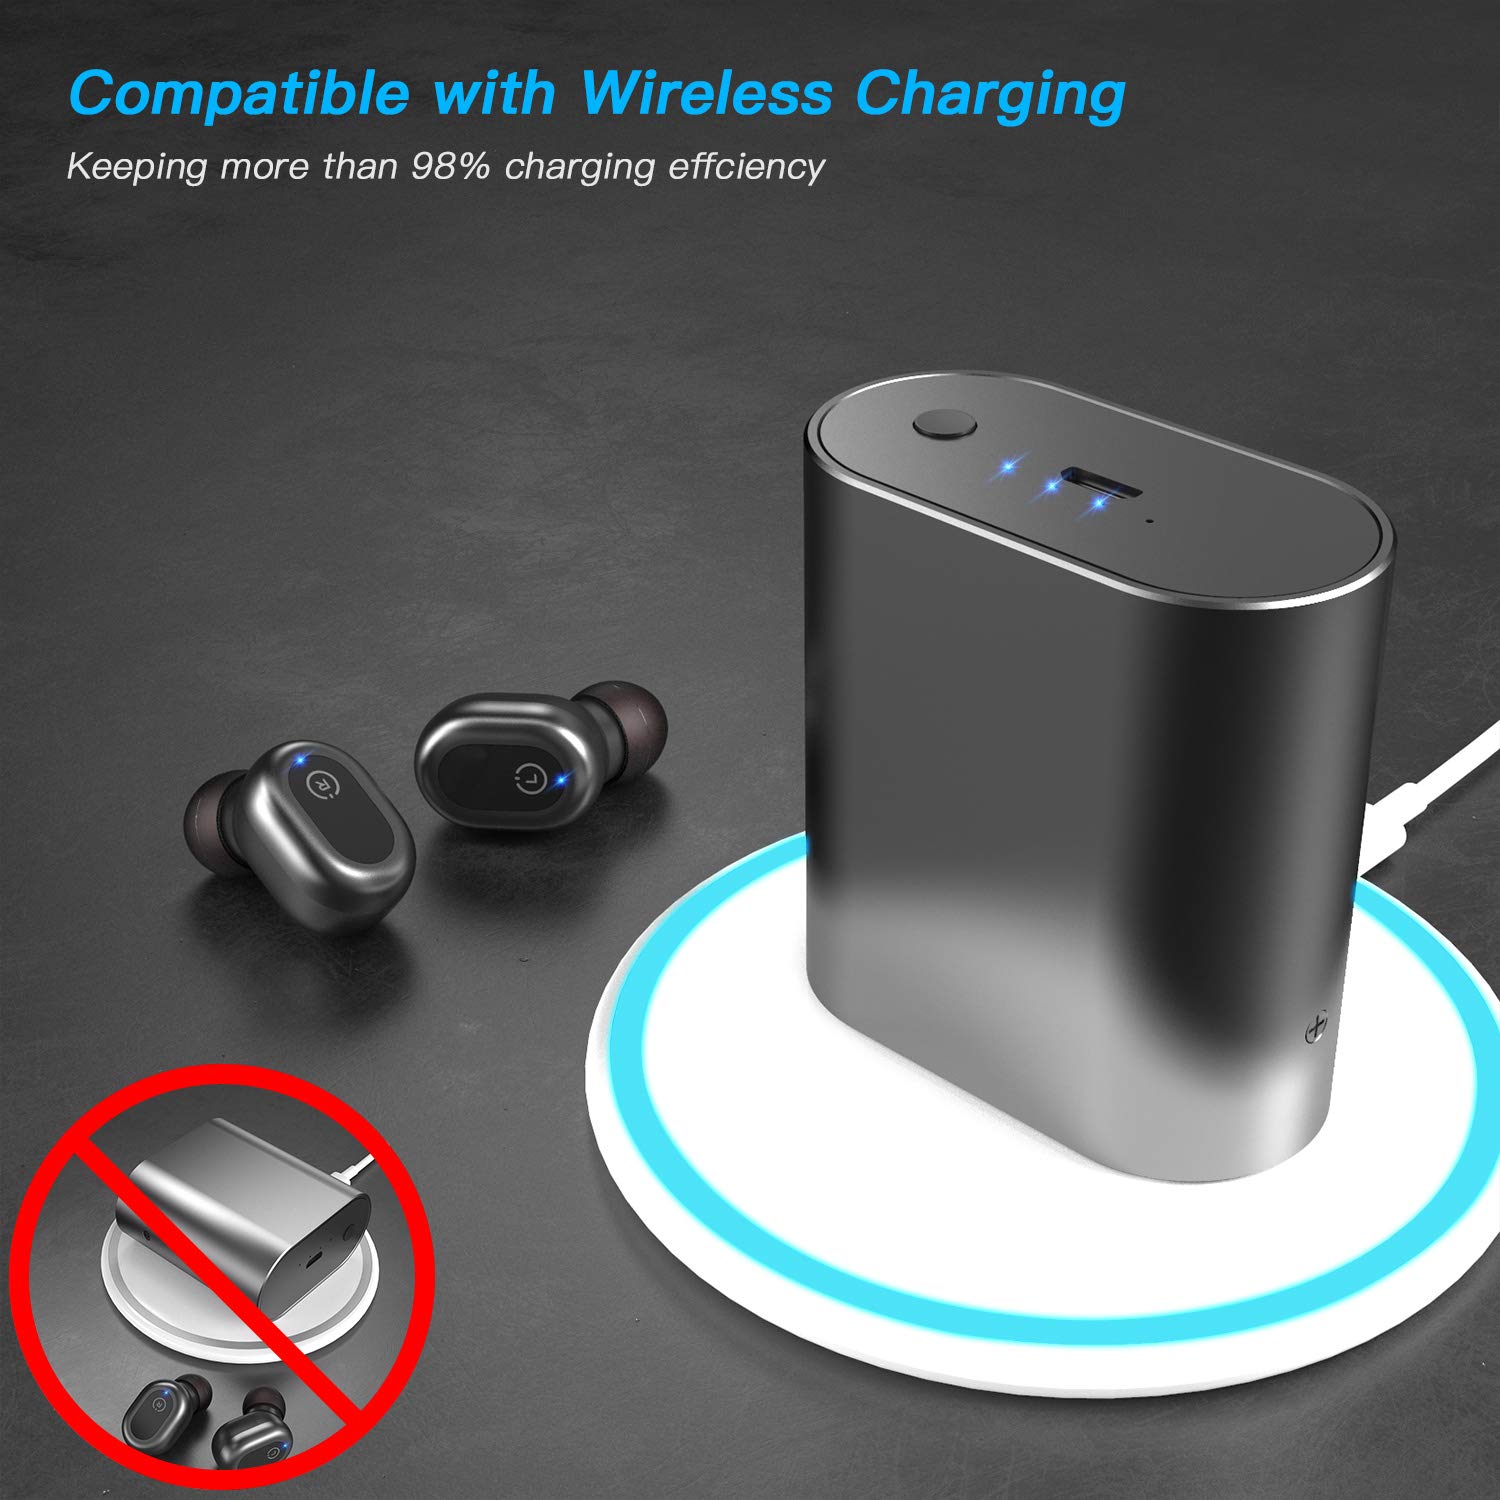 In-ear wireless IPX 7 waterproof bluetooth earphones support wireless charging